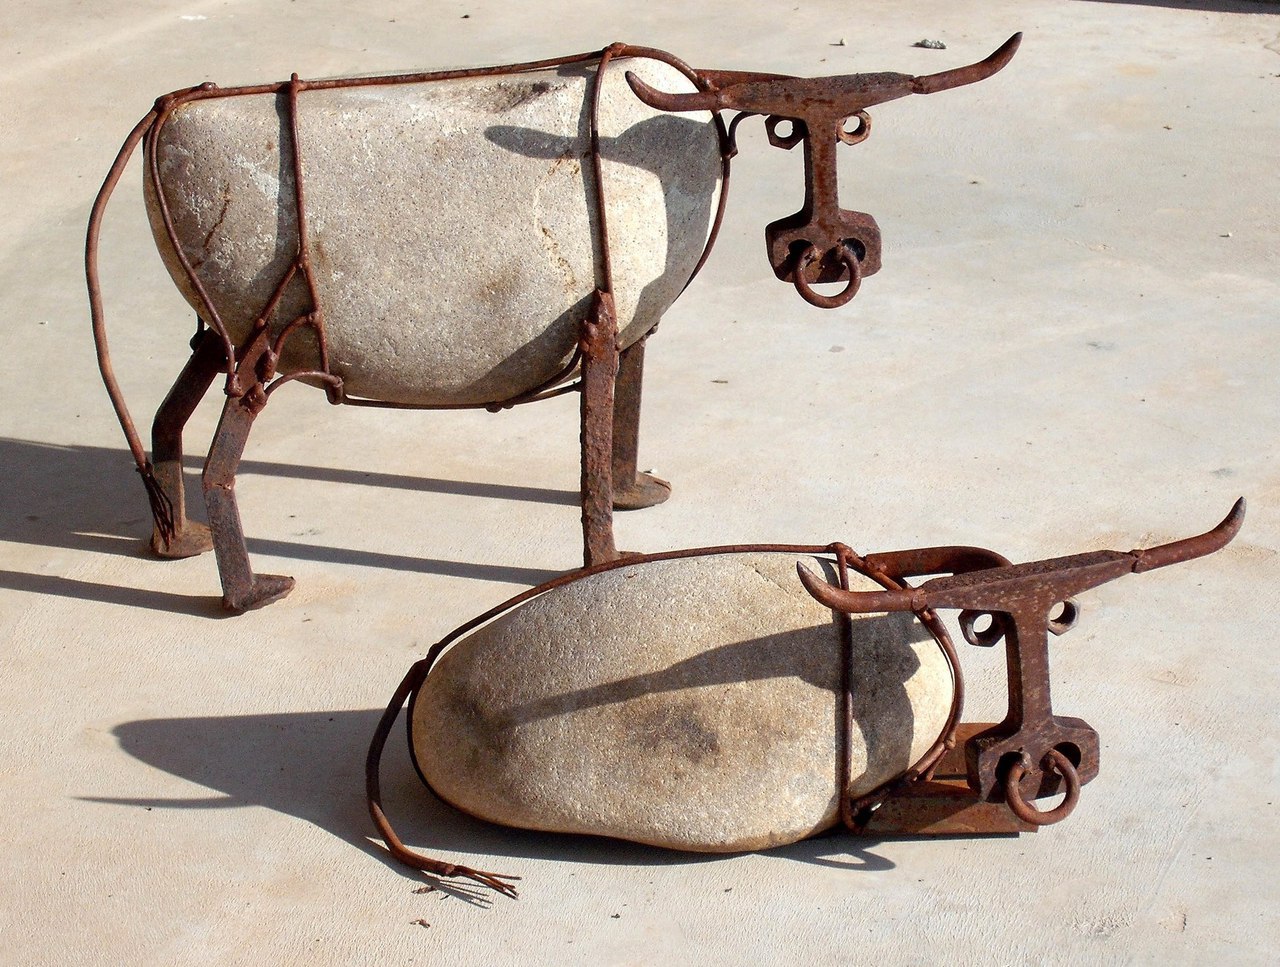 Bulls in modern art.